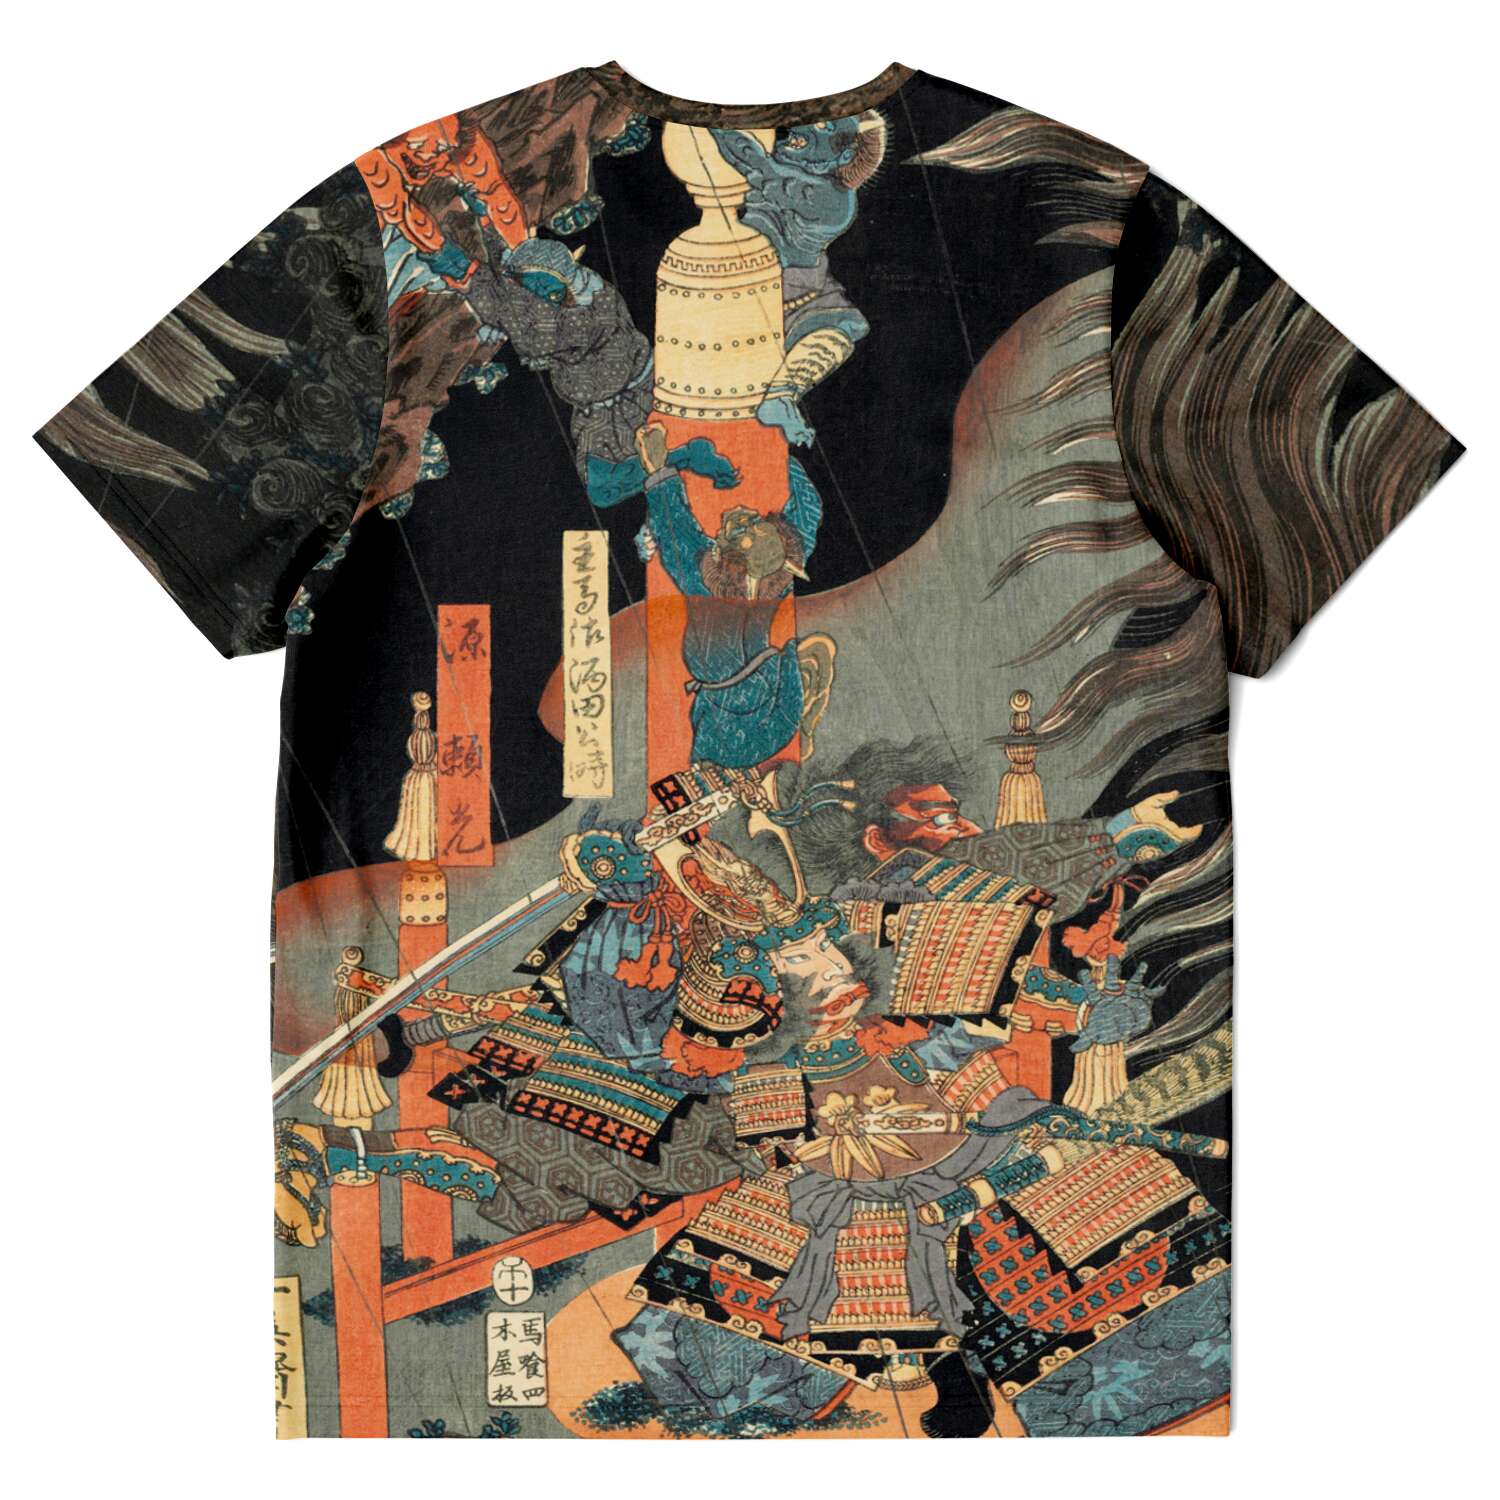 T-shirt Utagawa Yoshitsuya: Shuten Dōji at Oeyama Ukiyo-e Yokai Demon Vintage Japanese Ukiyo-e T-Shirt Tee